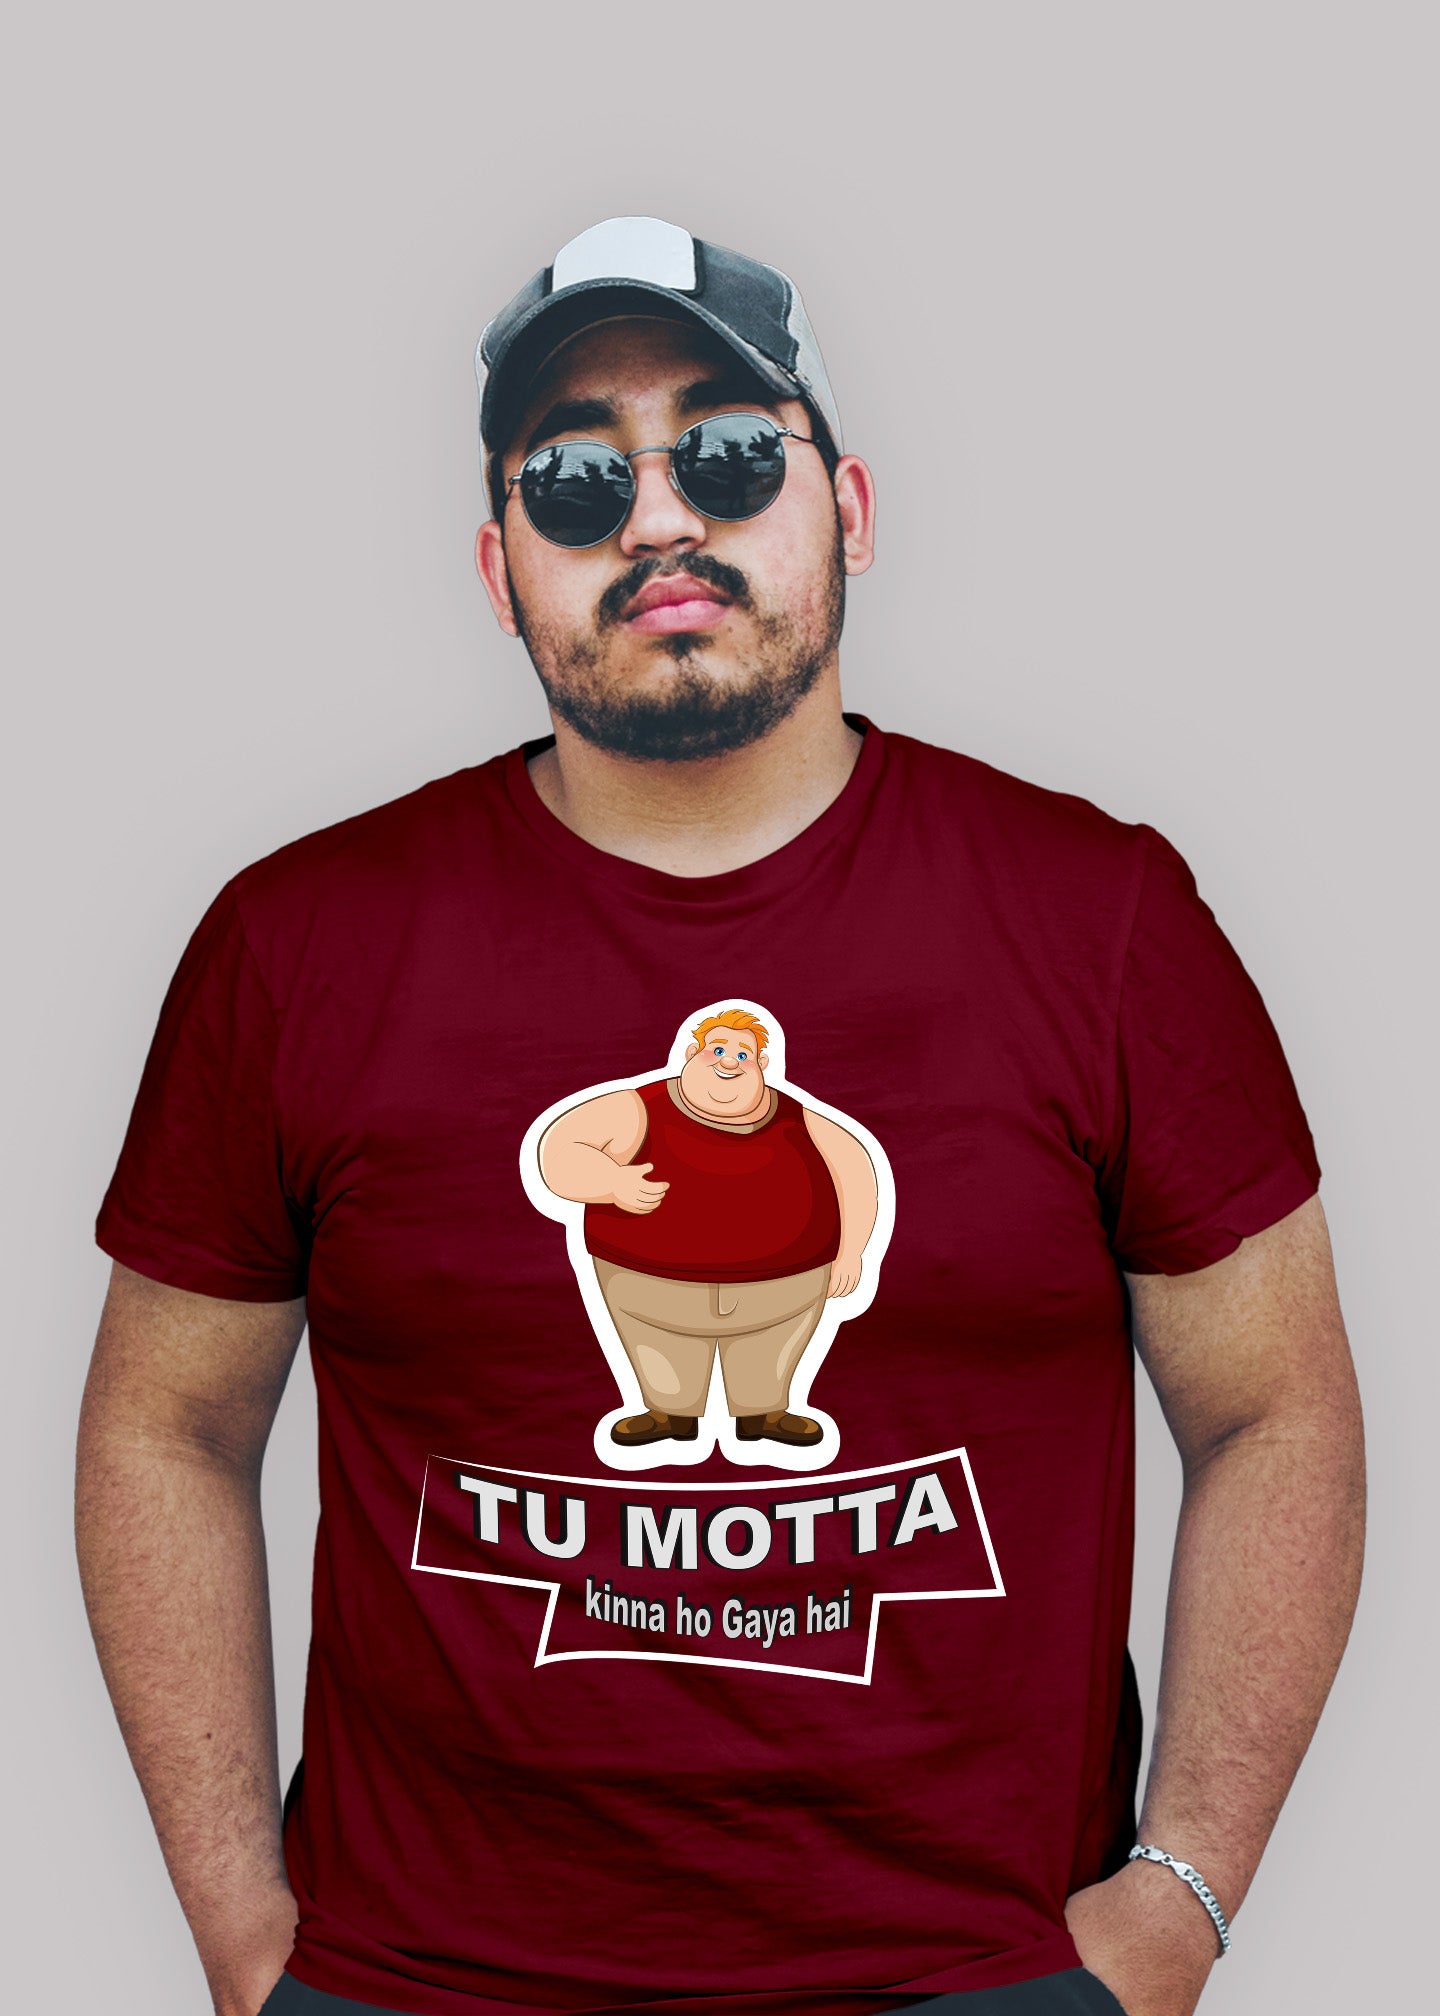 Tu Motta Kinna ho gaya Hai Printed Half Sleeve Premium Cotton T-shirt For Men